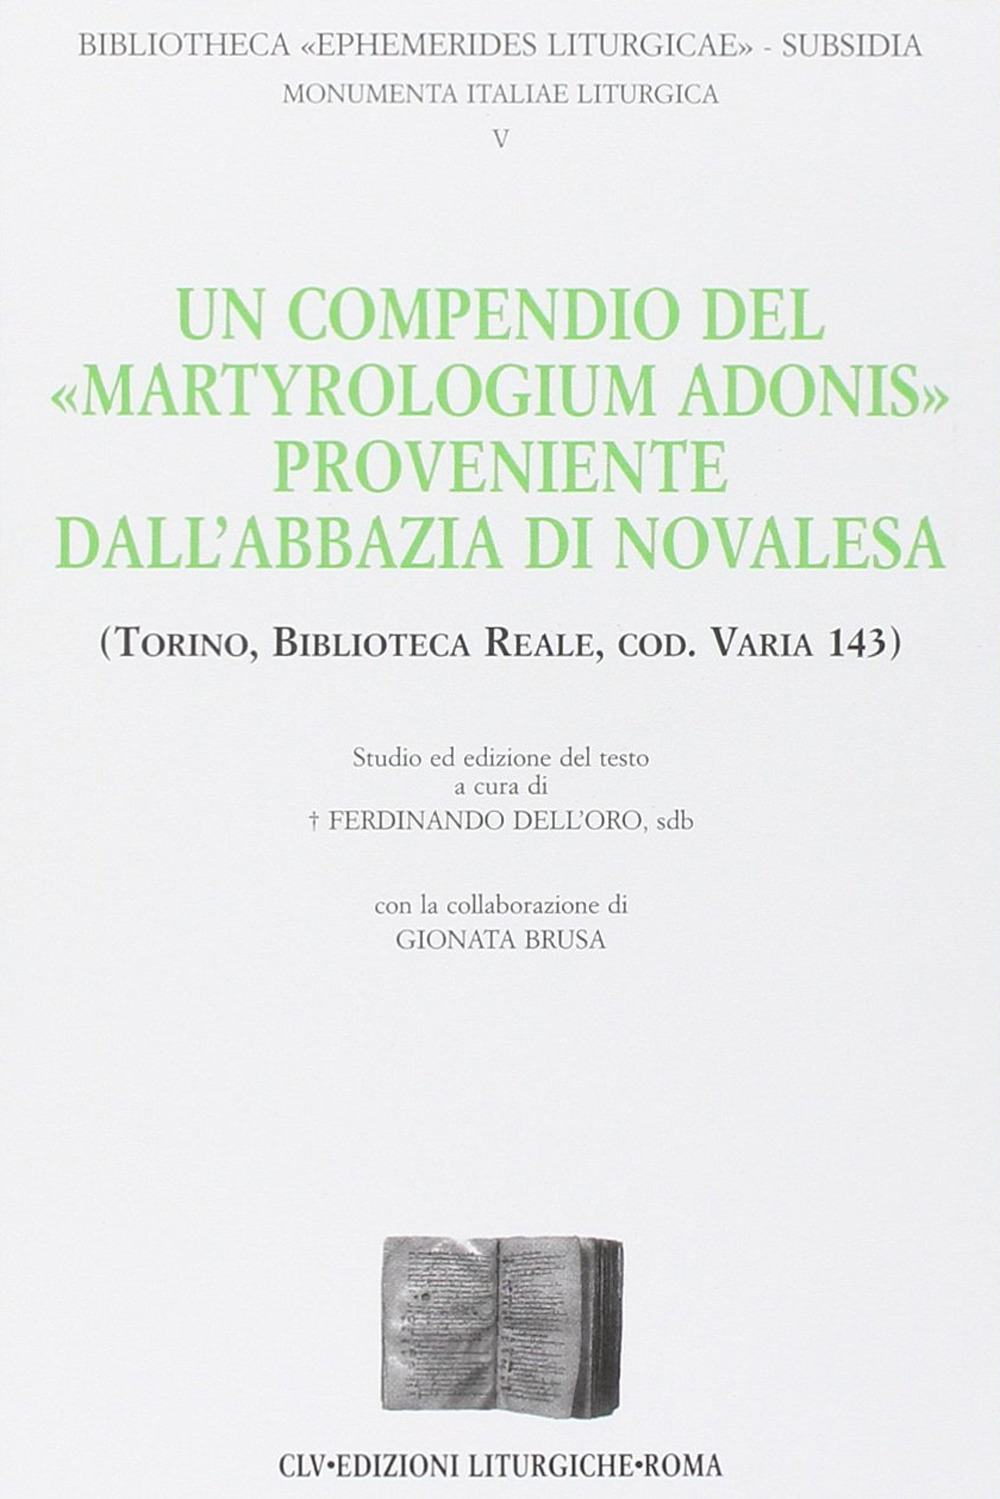 Un compendio del «Martyrologium Adonis» proveniente dall'abbazia di Novalesa (Torino, Biblioteca Reale, cod. varia 143)